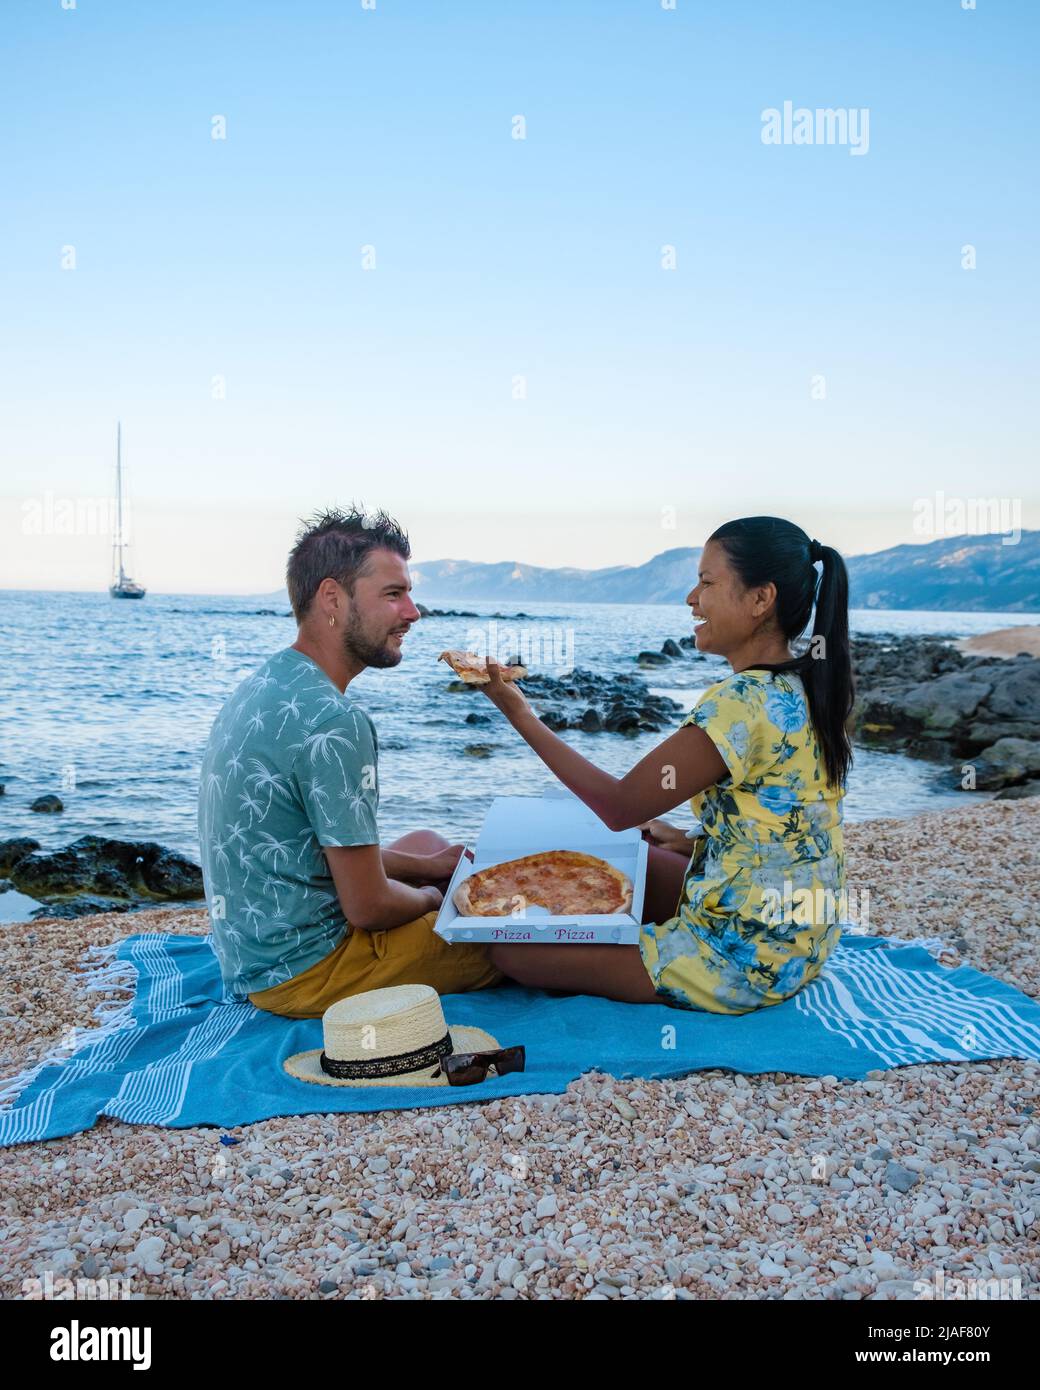 Golfo di Orosei Sardina, Männer und Frauen am Strand Pizza essen, glückliche Männer und Frauen am Strand mit Pizza in Italien. Stockfoto